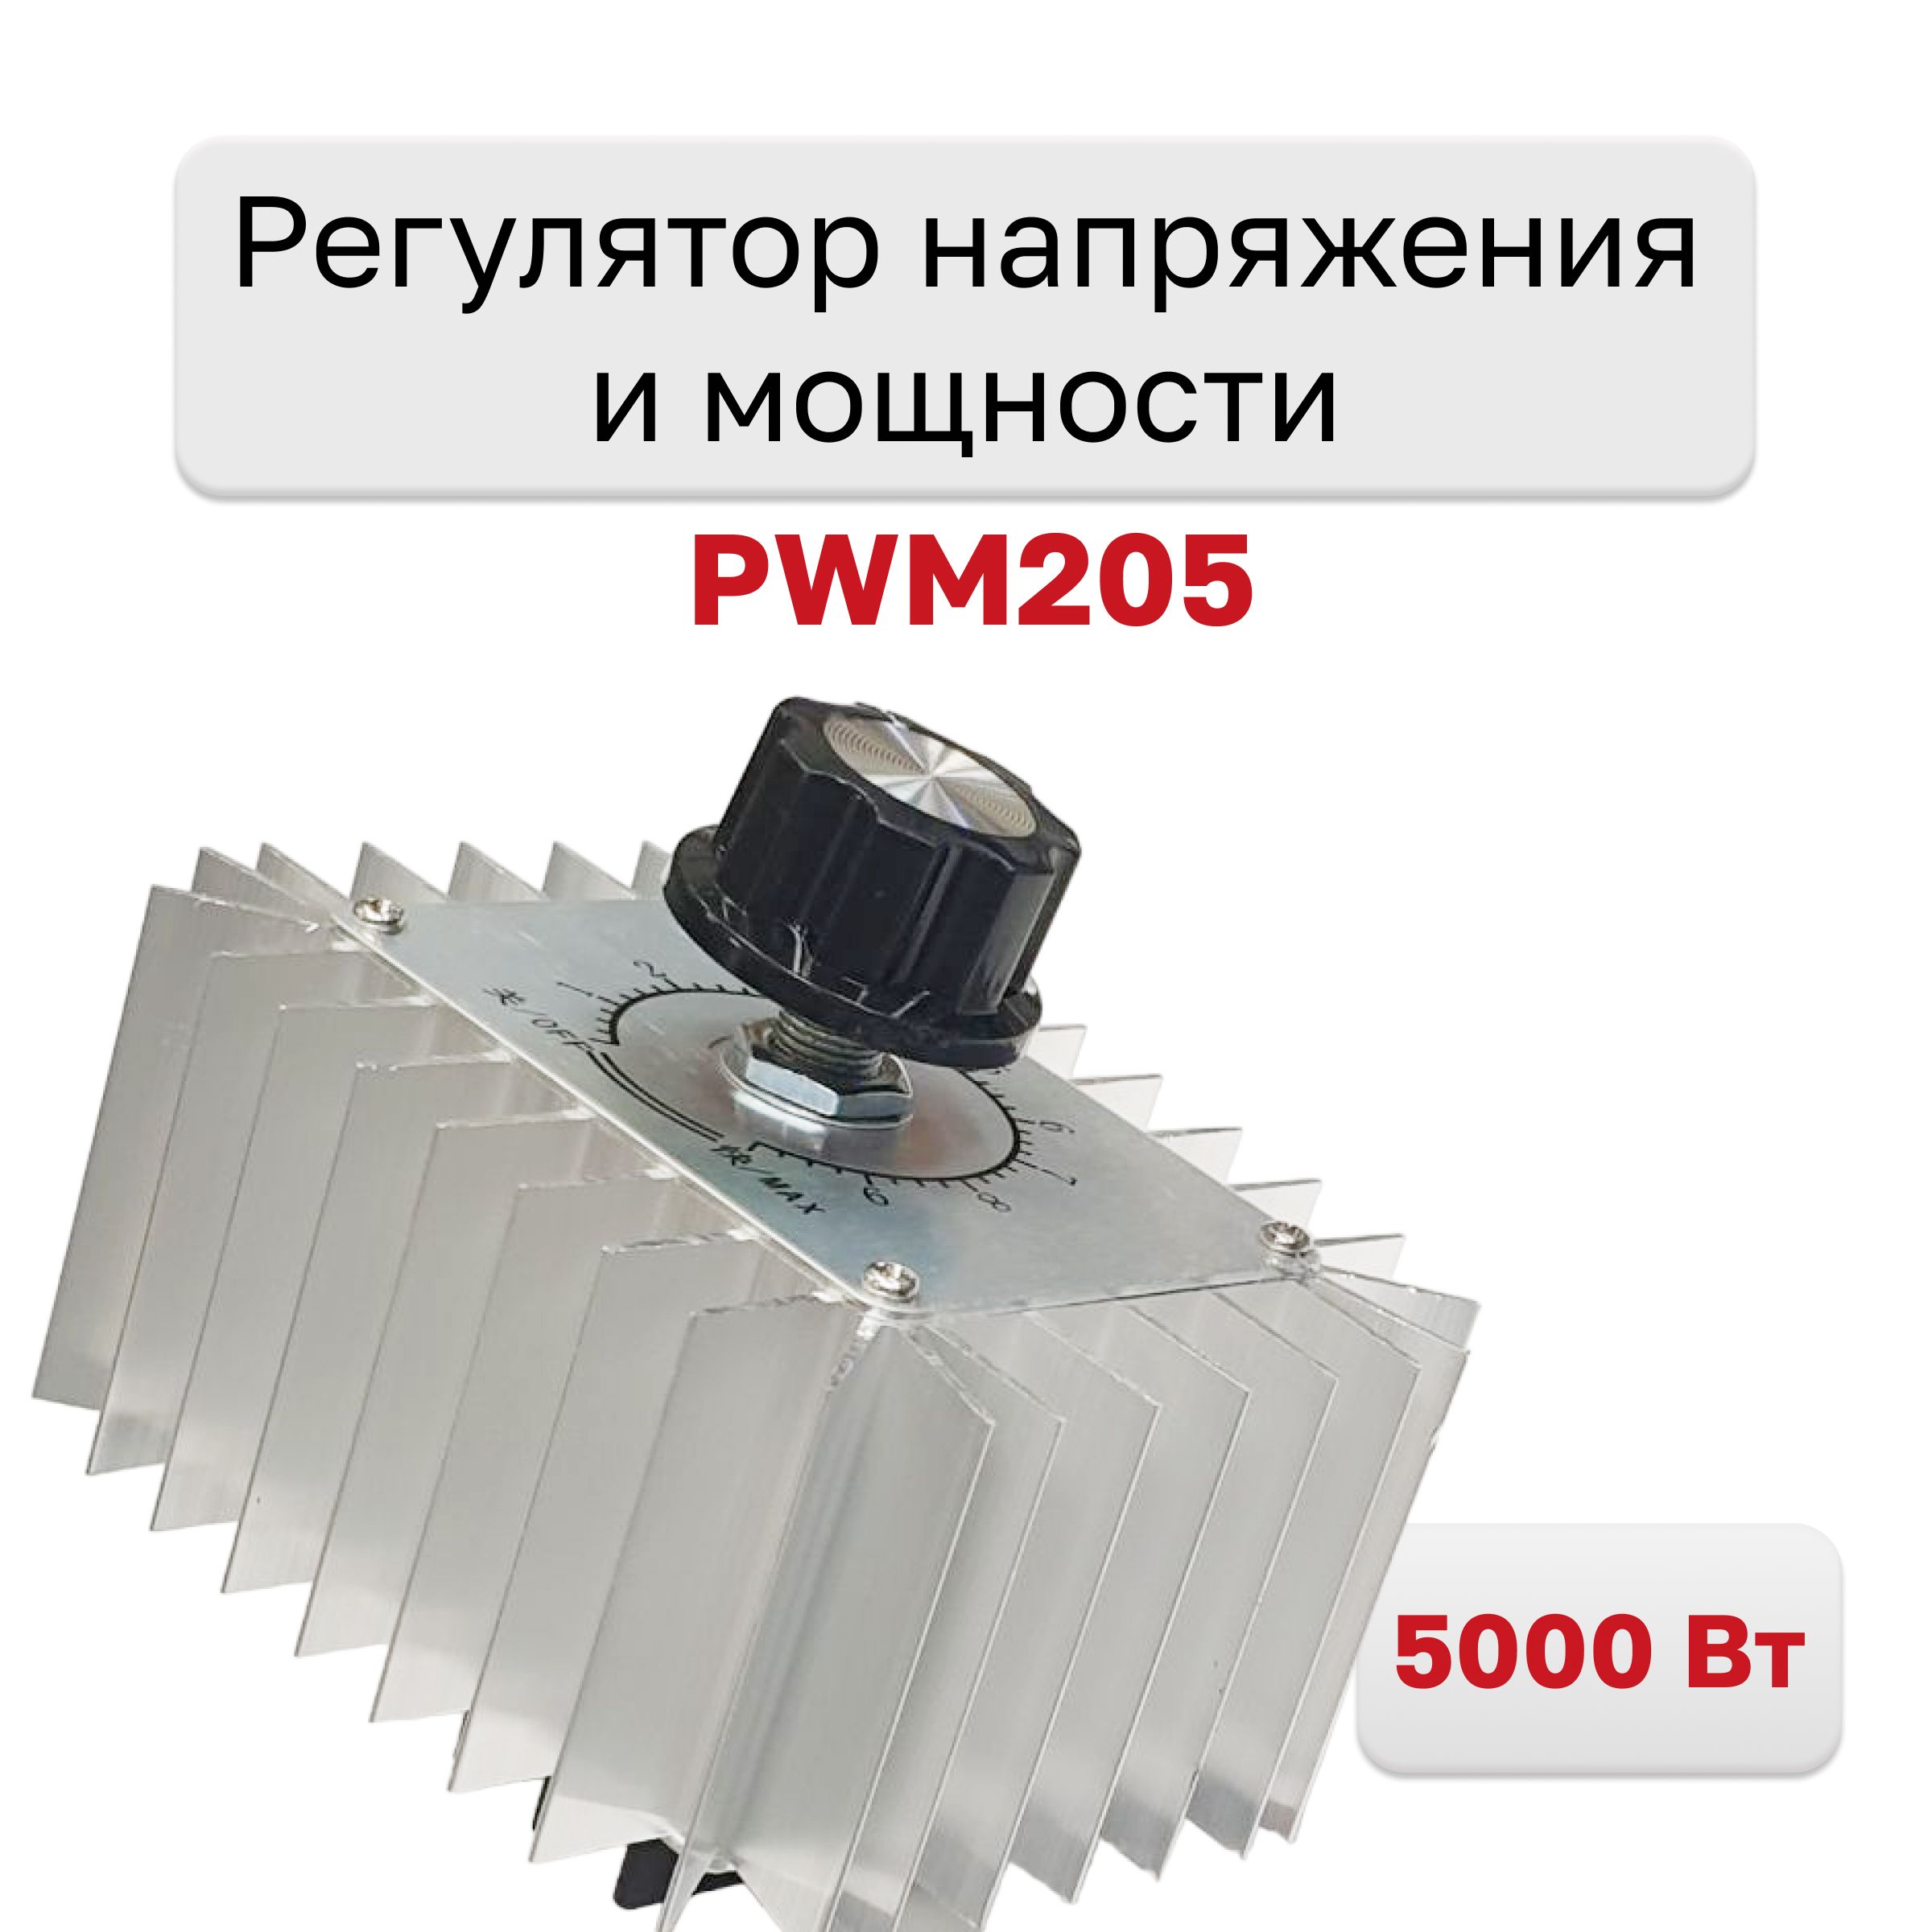 PWM205,Регуляторнапряженияимощности220В5000Вт